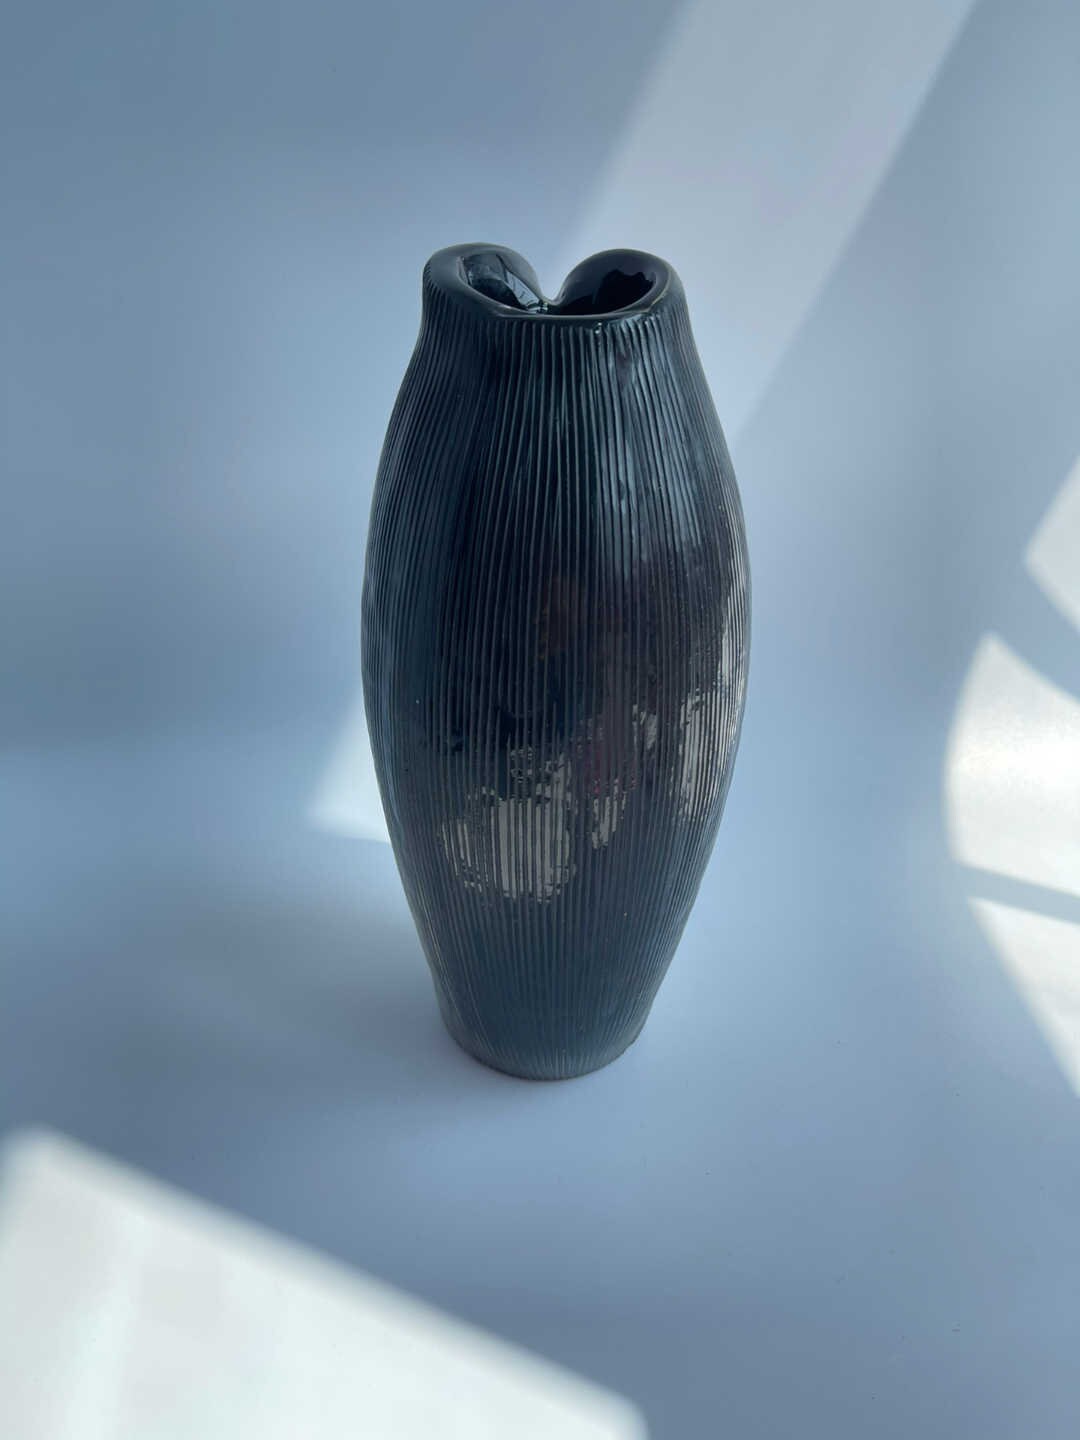 Elegant Design Glass Vases - ApolloBox